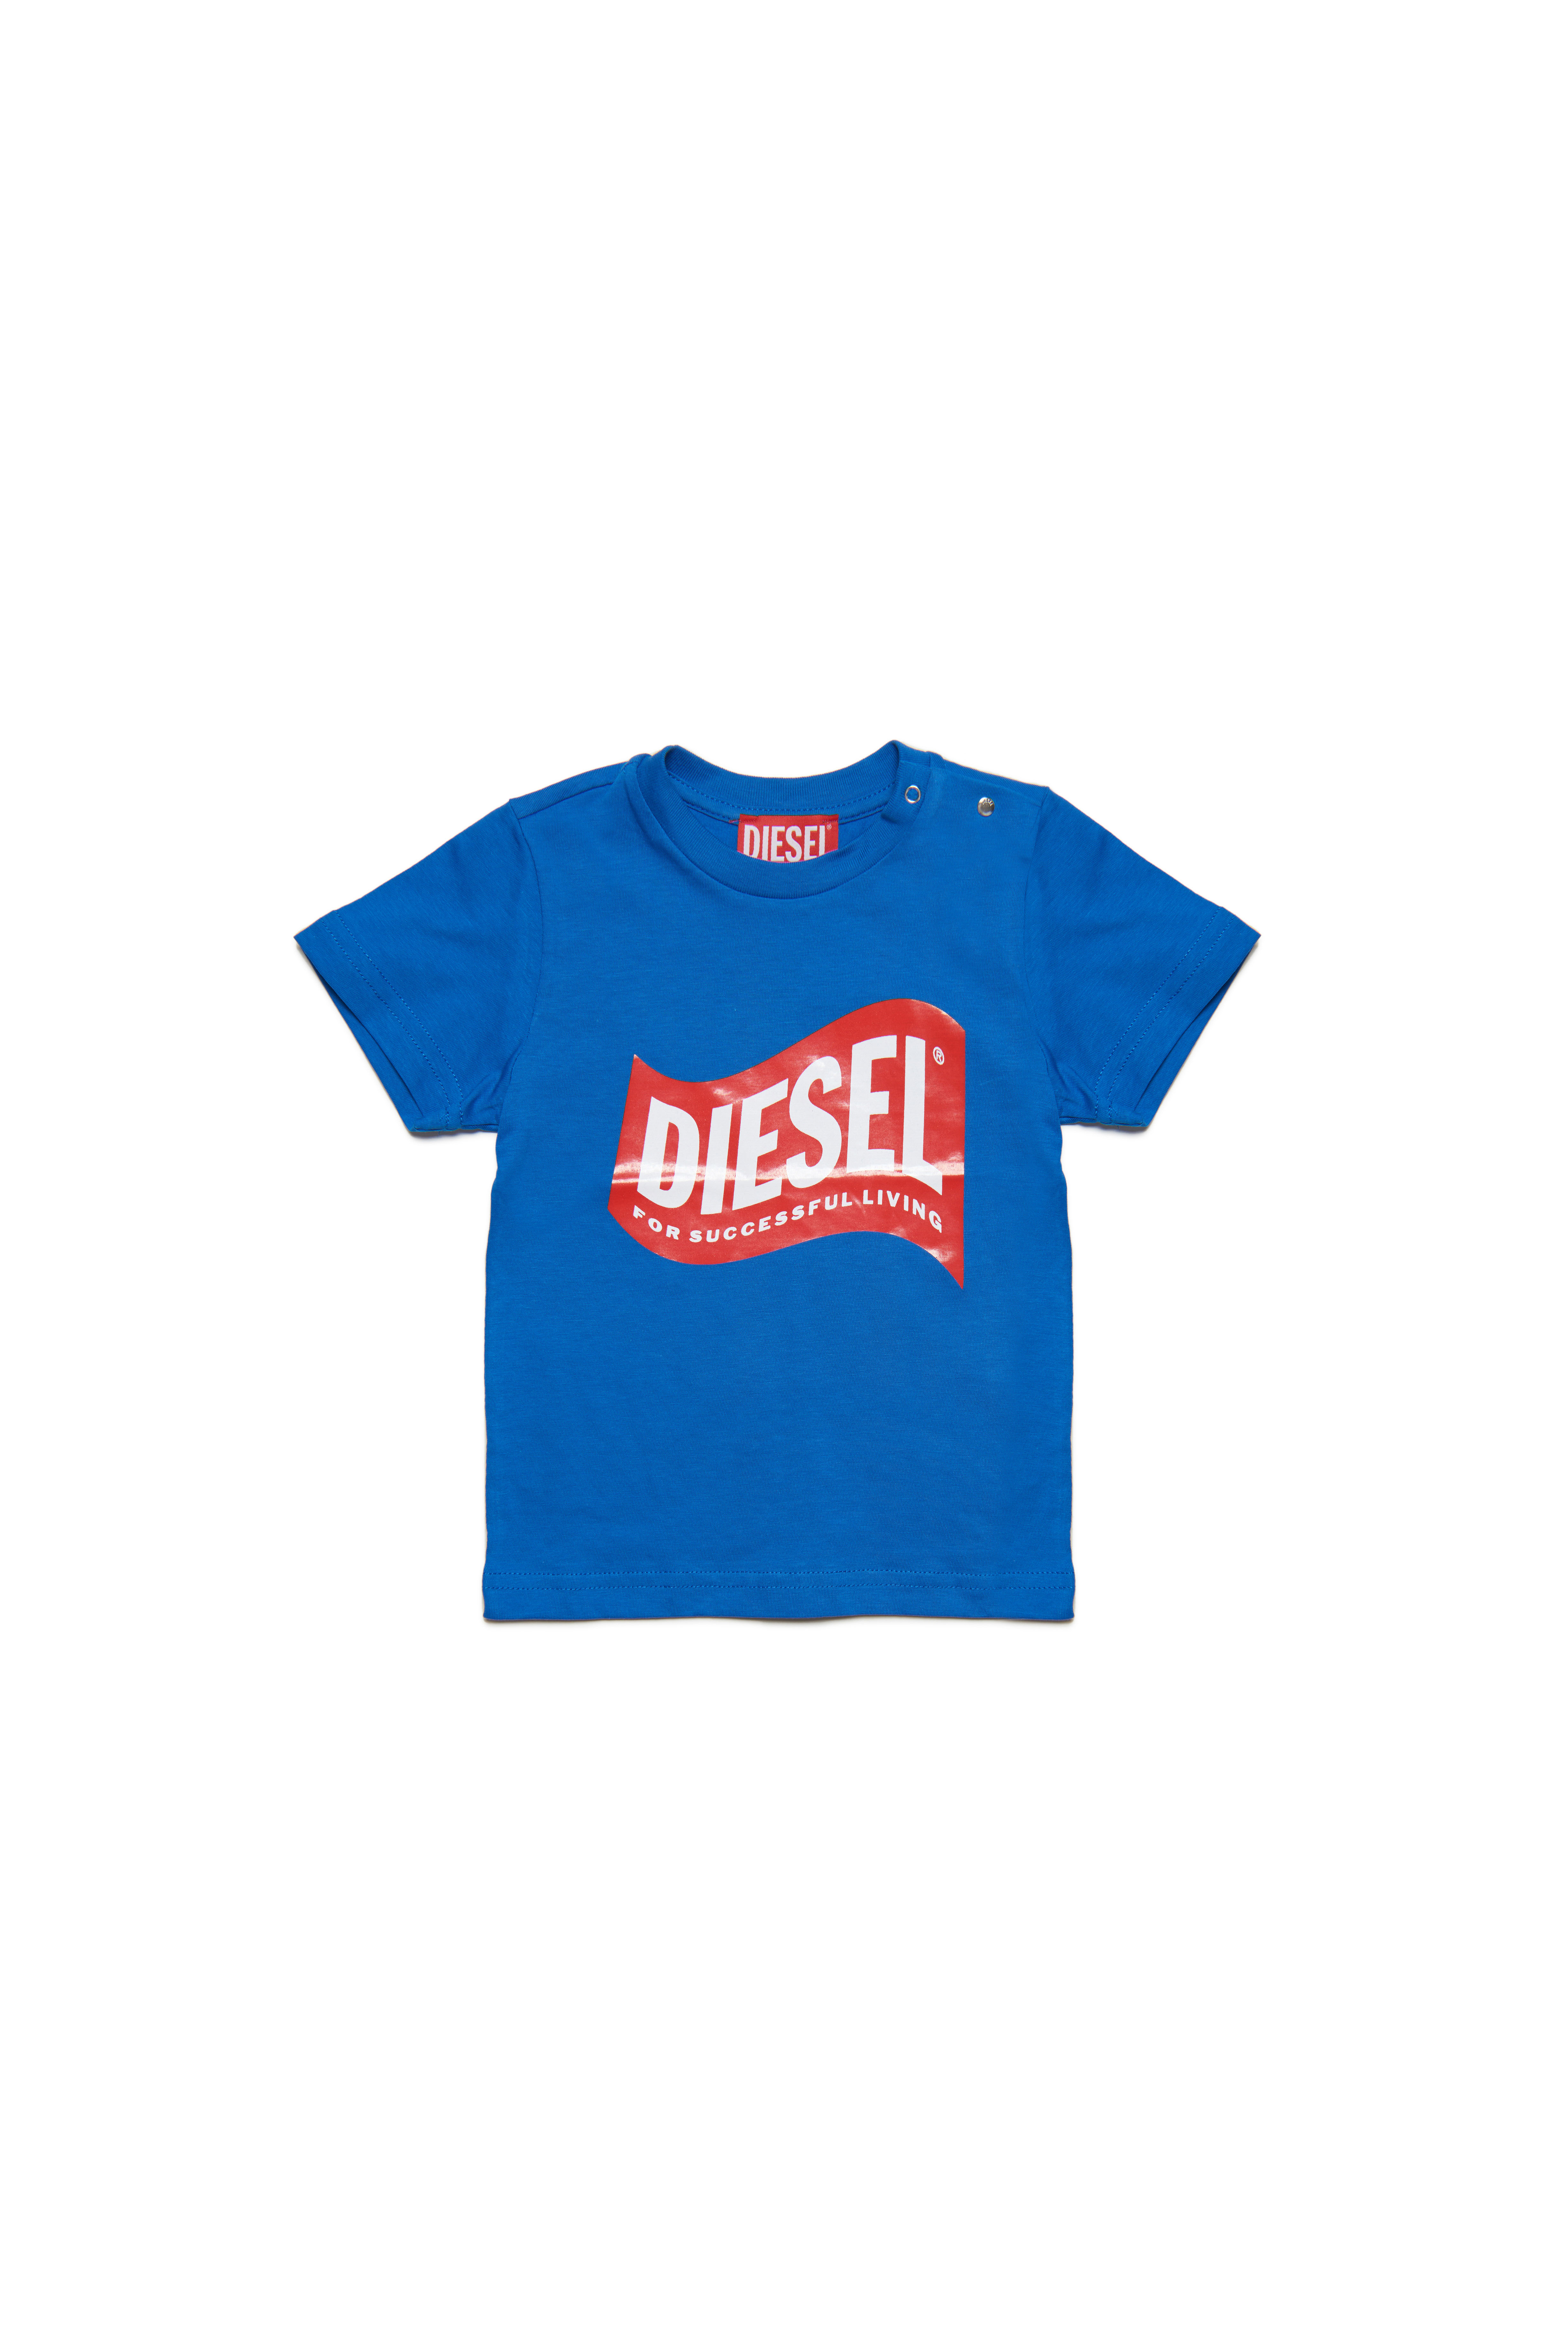 Diesel - TLINB, Blue - Image 1